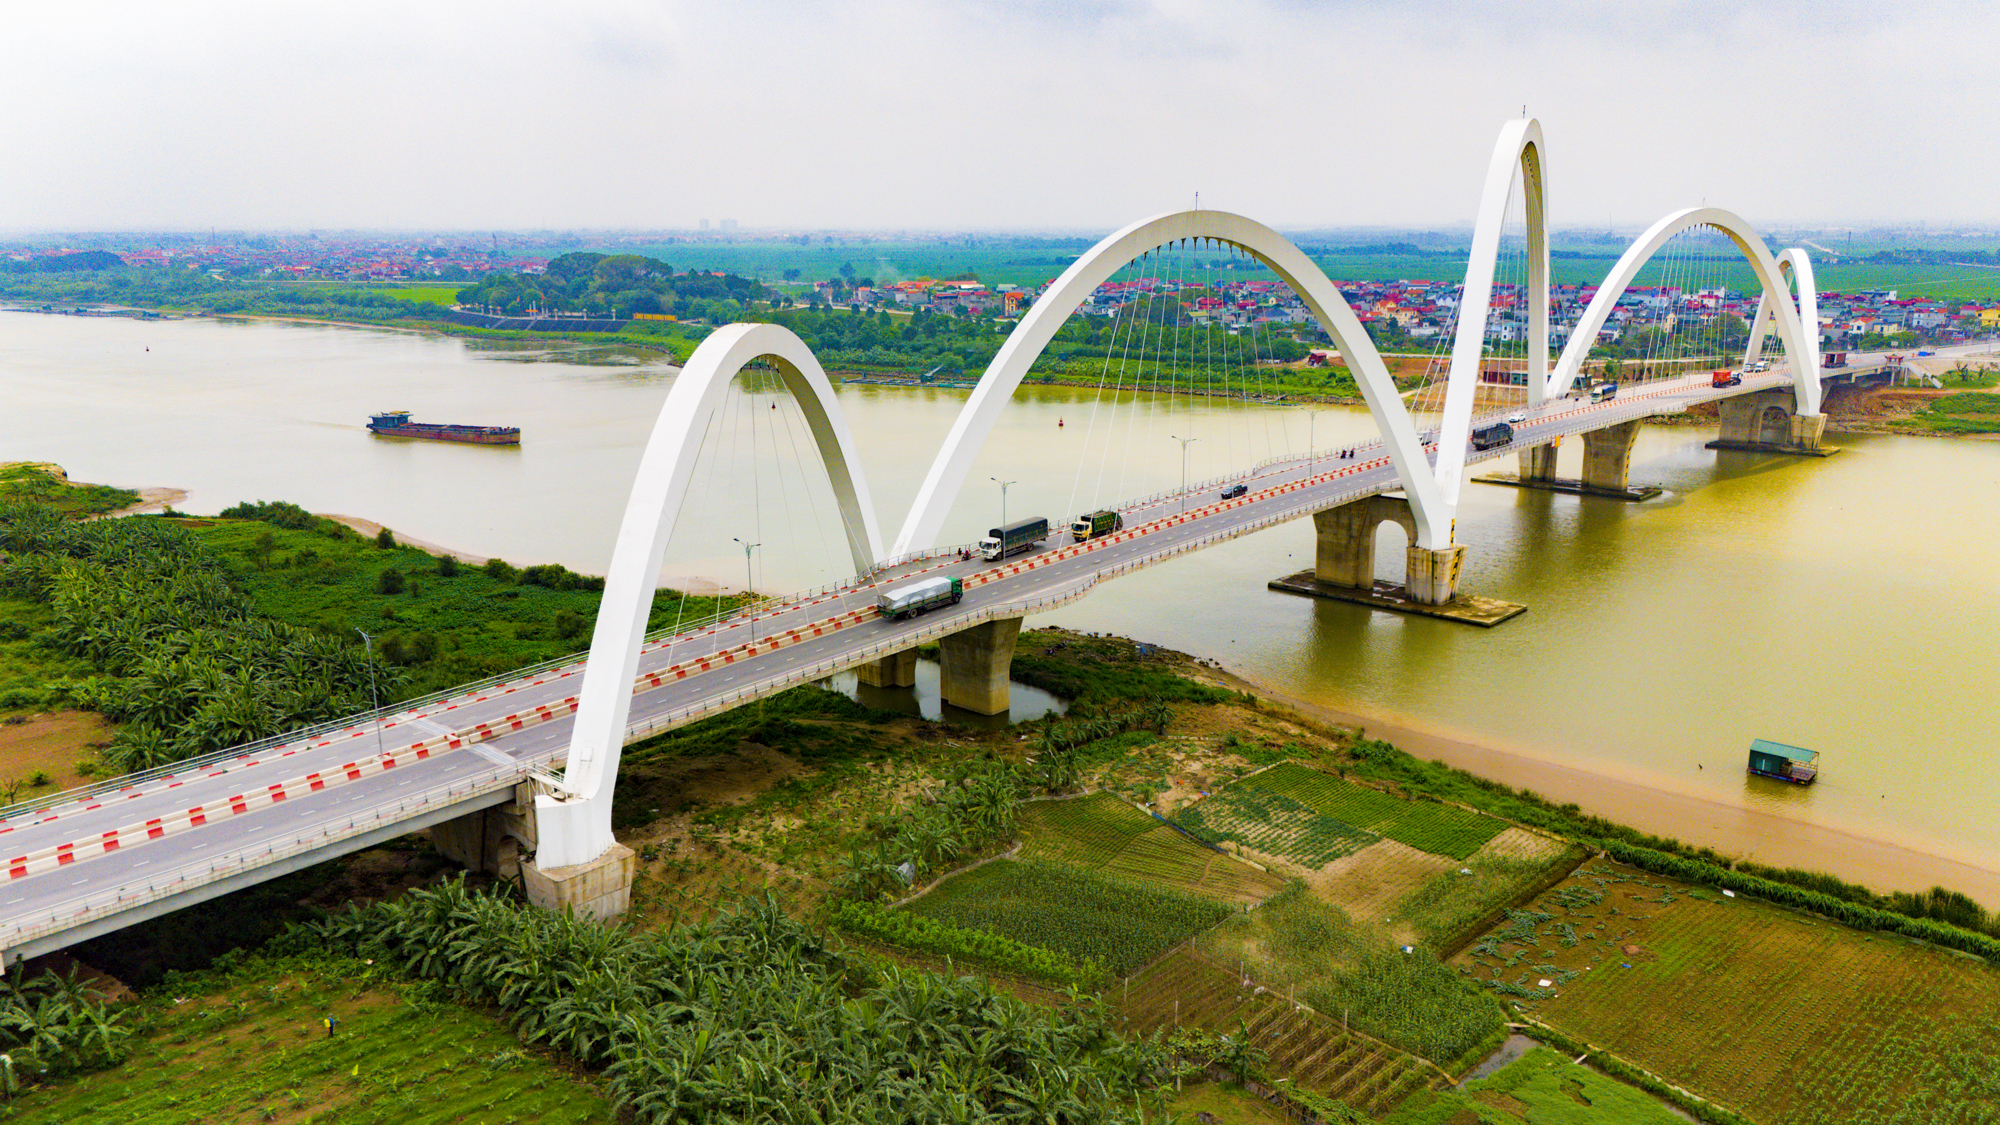 Cần cẩu siêu trọng đi suốt một tháng để dựng nên cầu 1.900 tỷ, có vòm thép cao nhất Việt Nam- Ảnh 2.